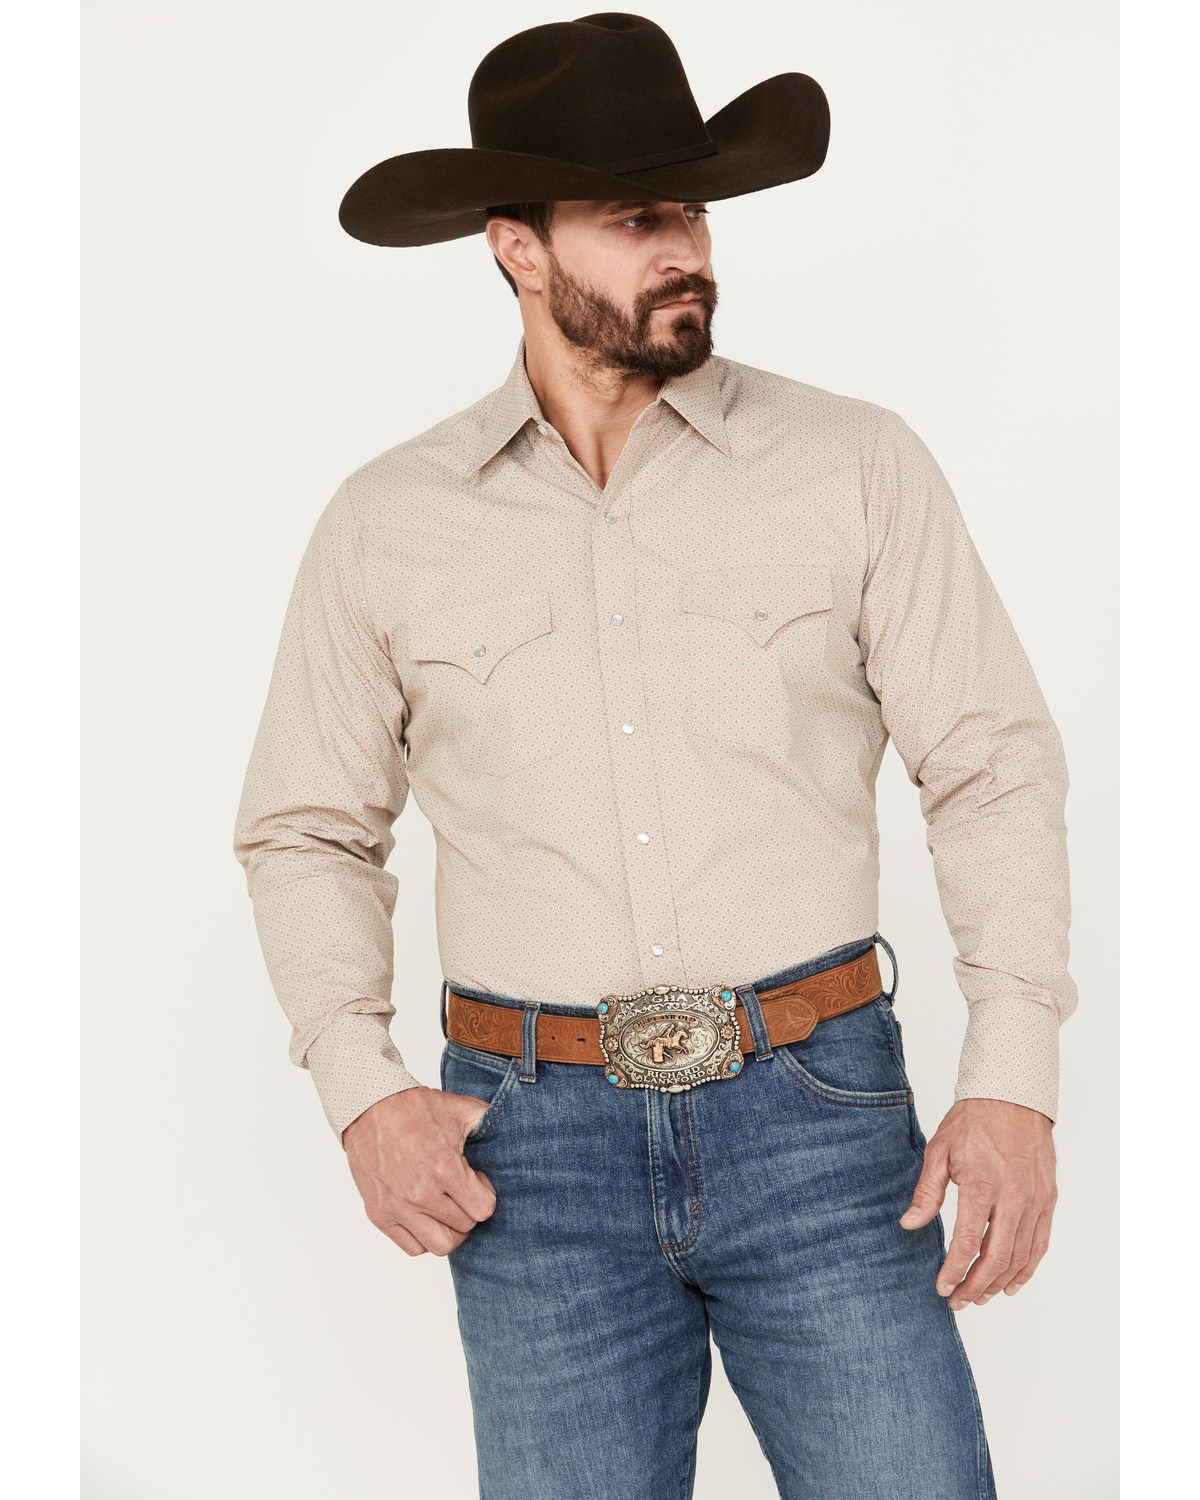 Ely Walker Men's Geo Print Long Sleeve Pearl Snap Western Shirt